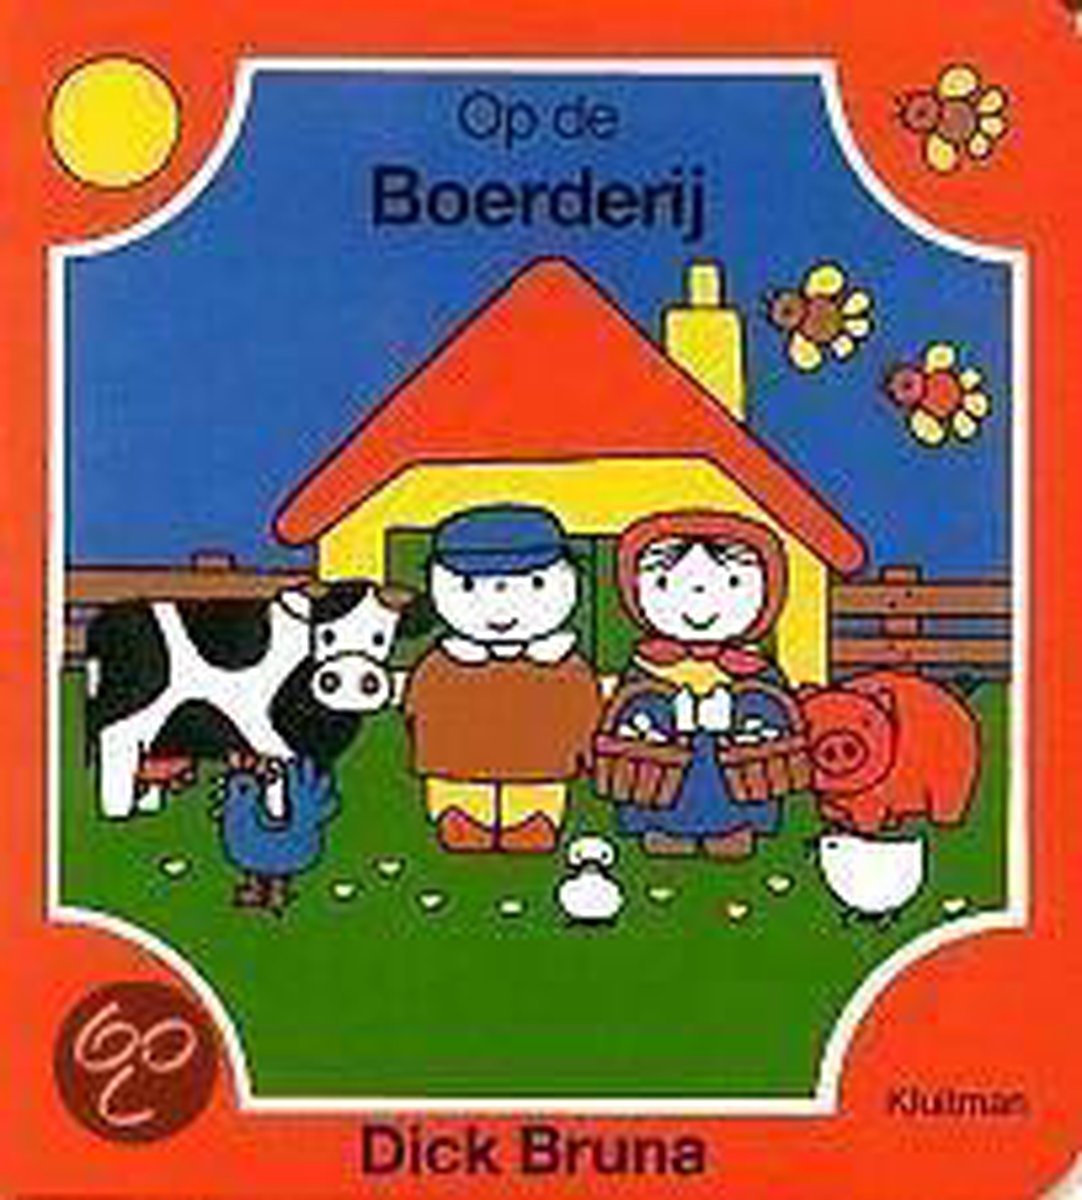 Bruna kartonboek. op de boerderij